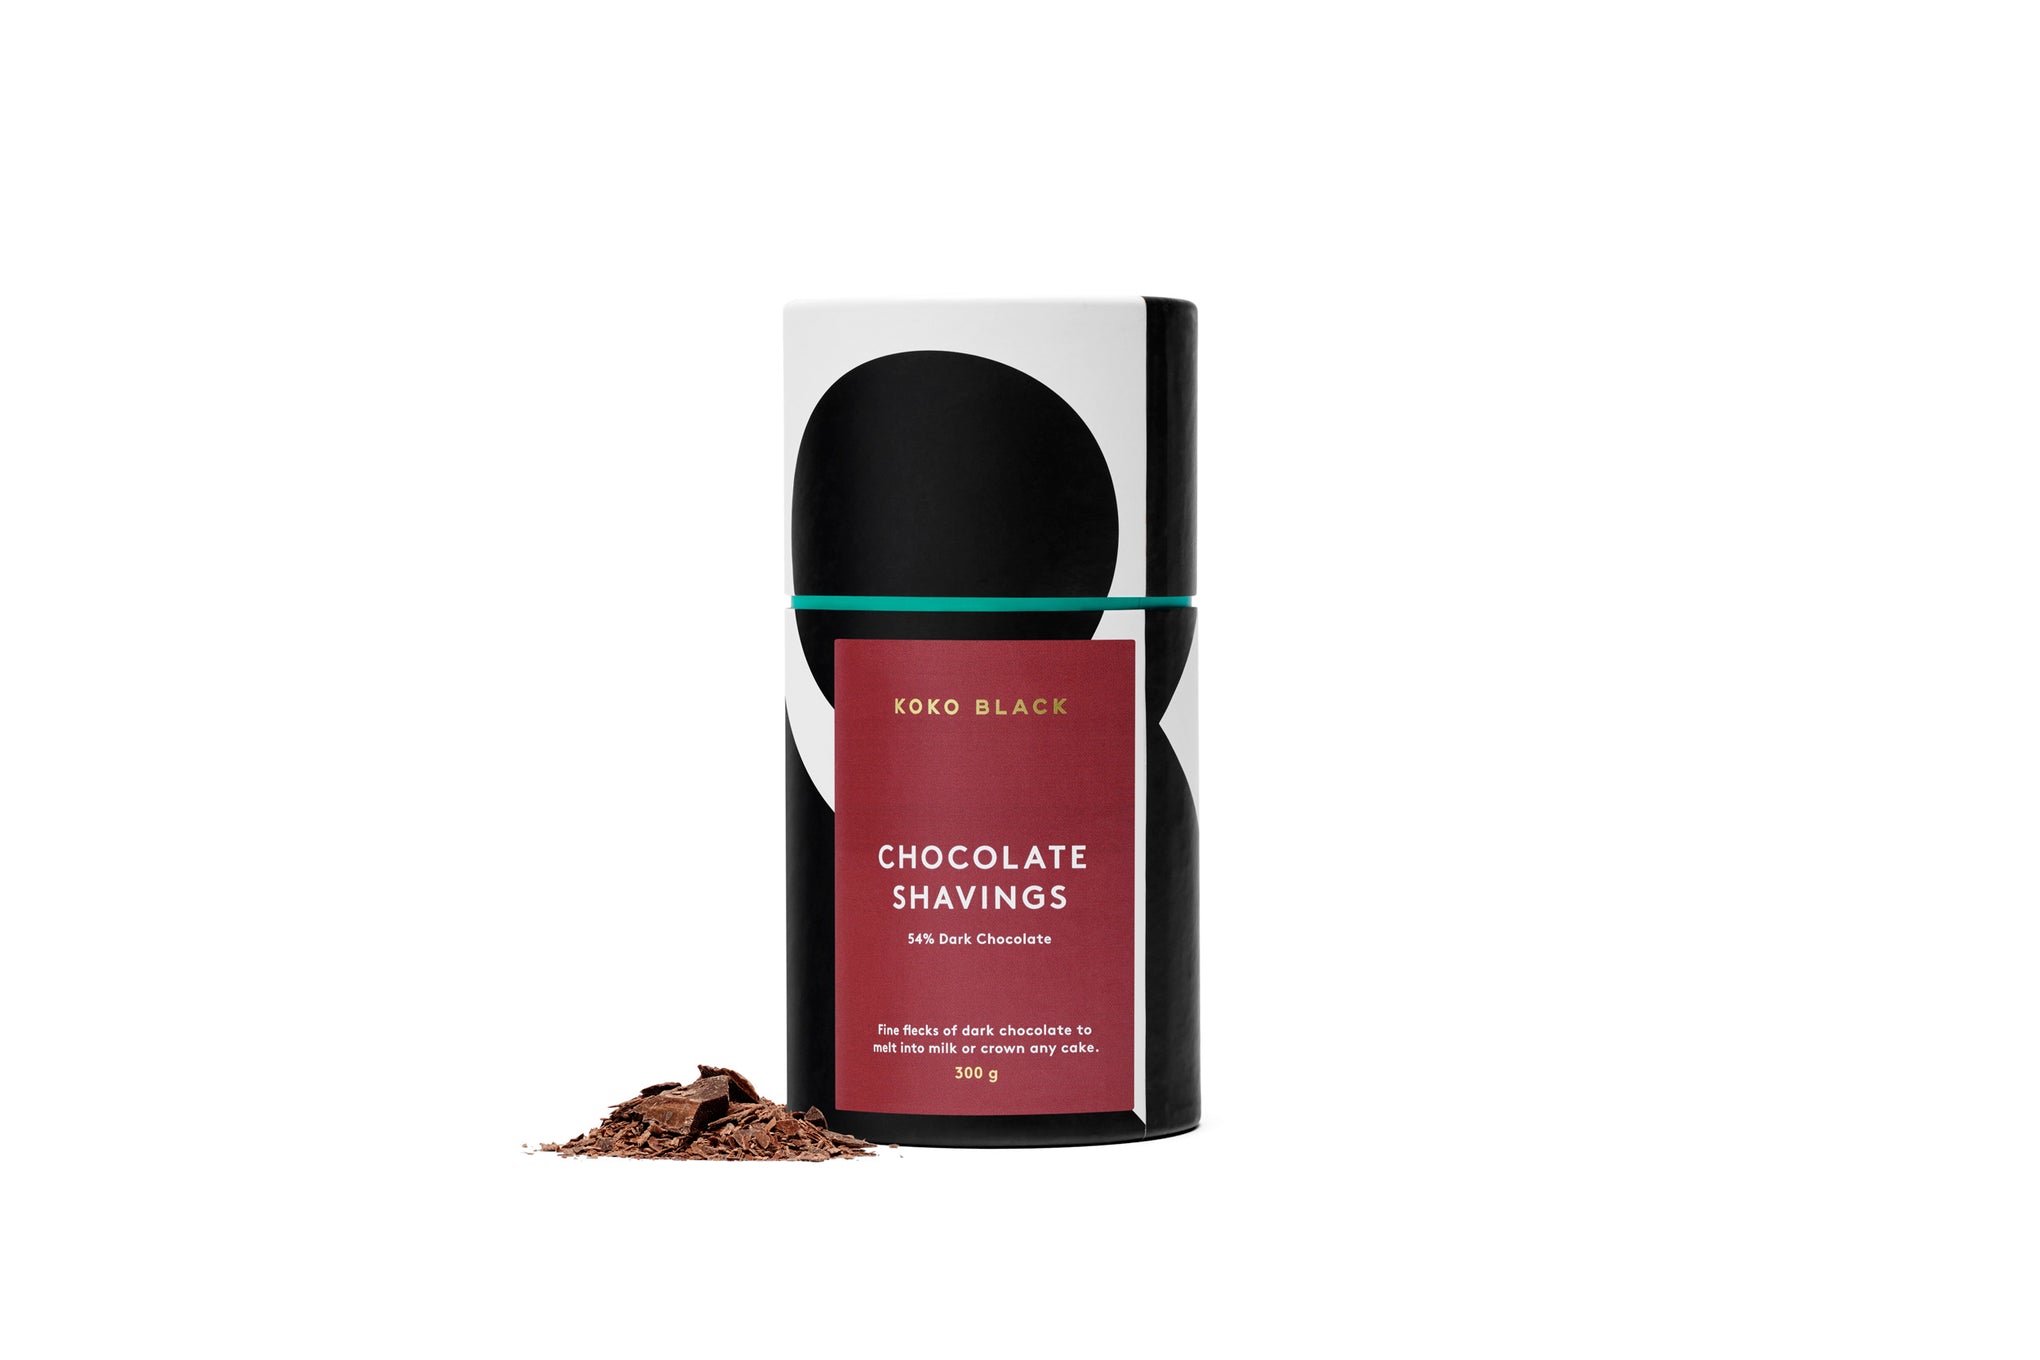 Shavings 300g | 54% Dark Chocolate